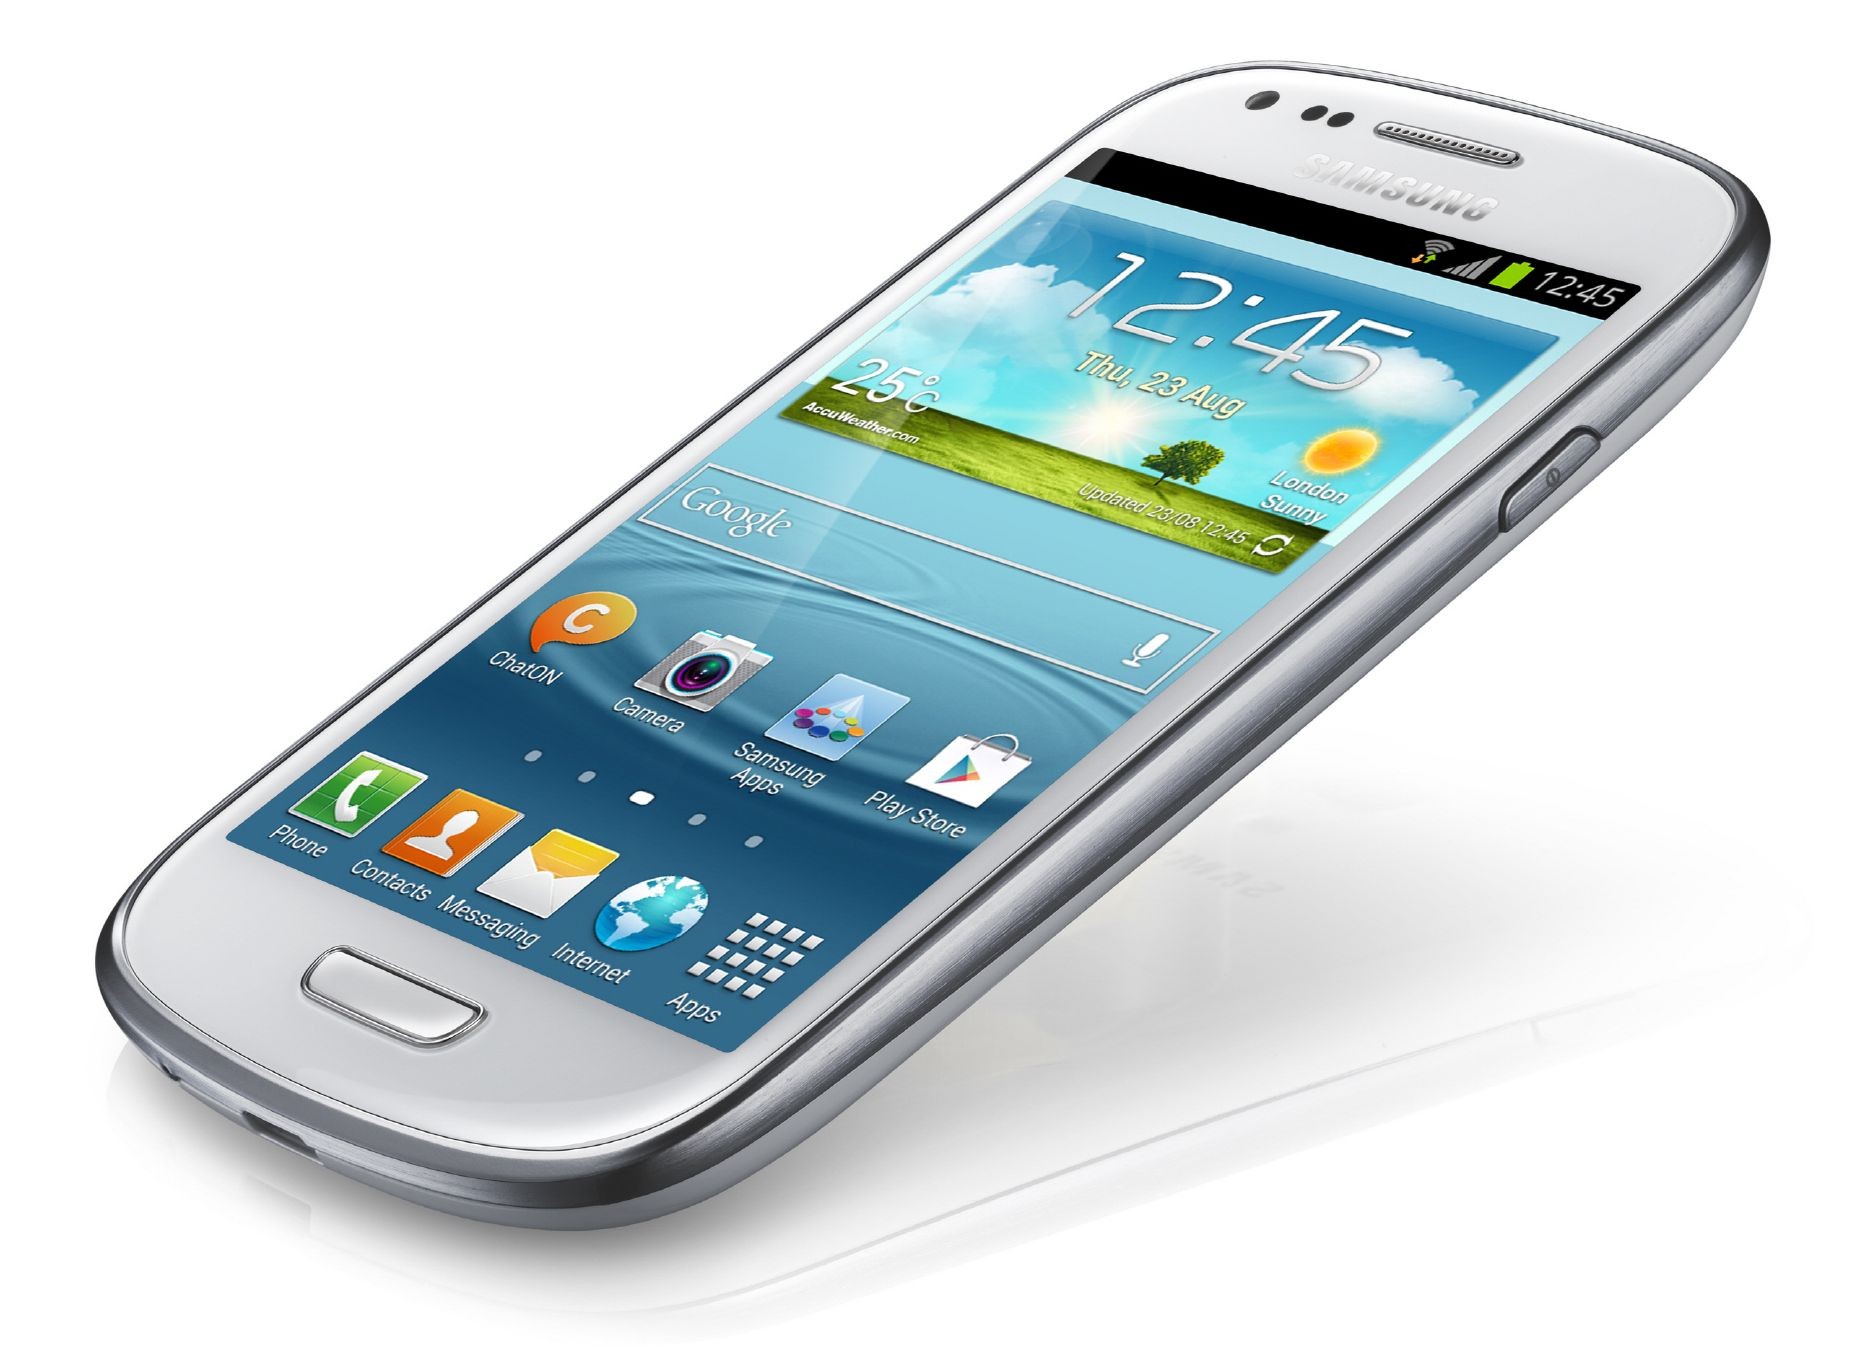 Samsung Galaxy S3 Mini funciona con la plataforma NovaThor ModAp de ST-Ericsson